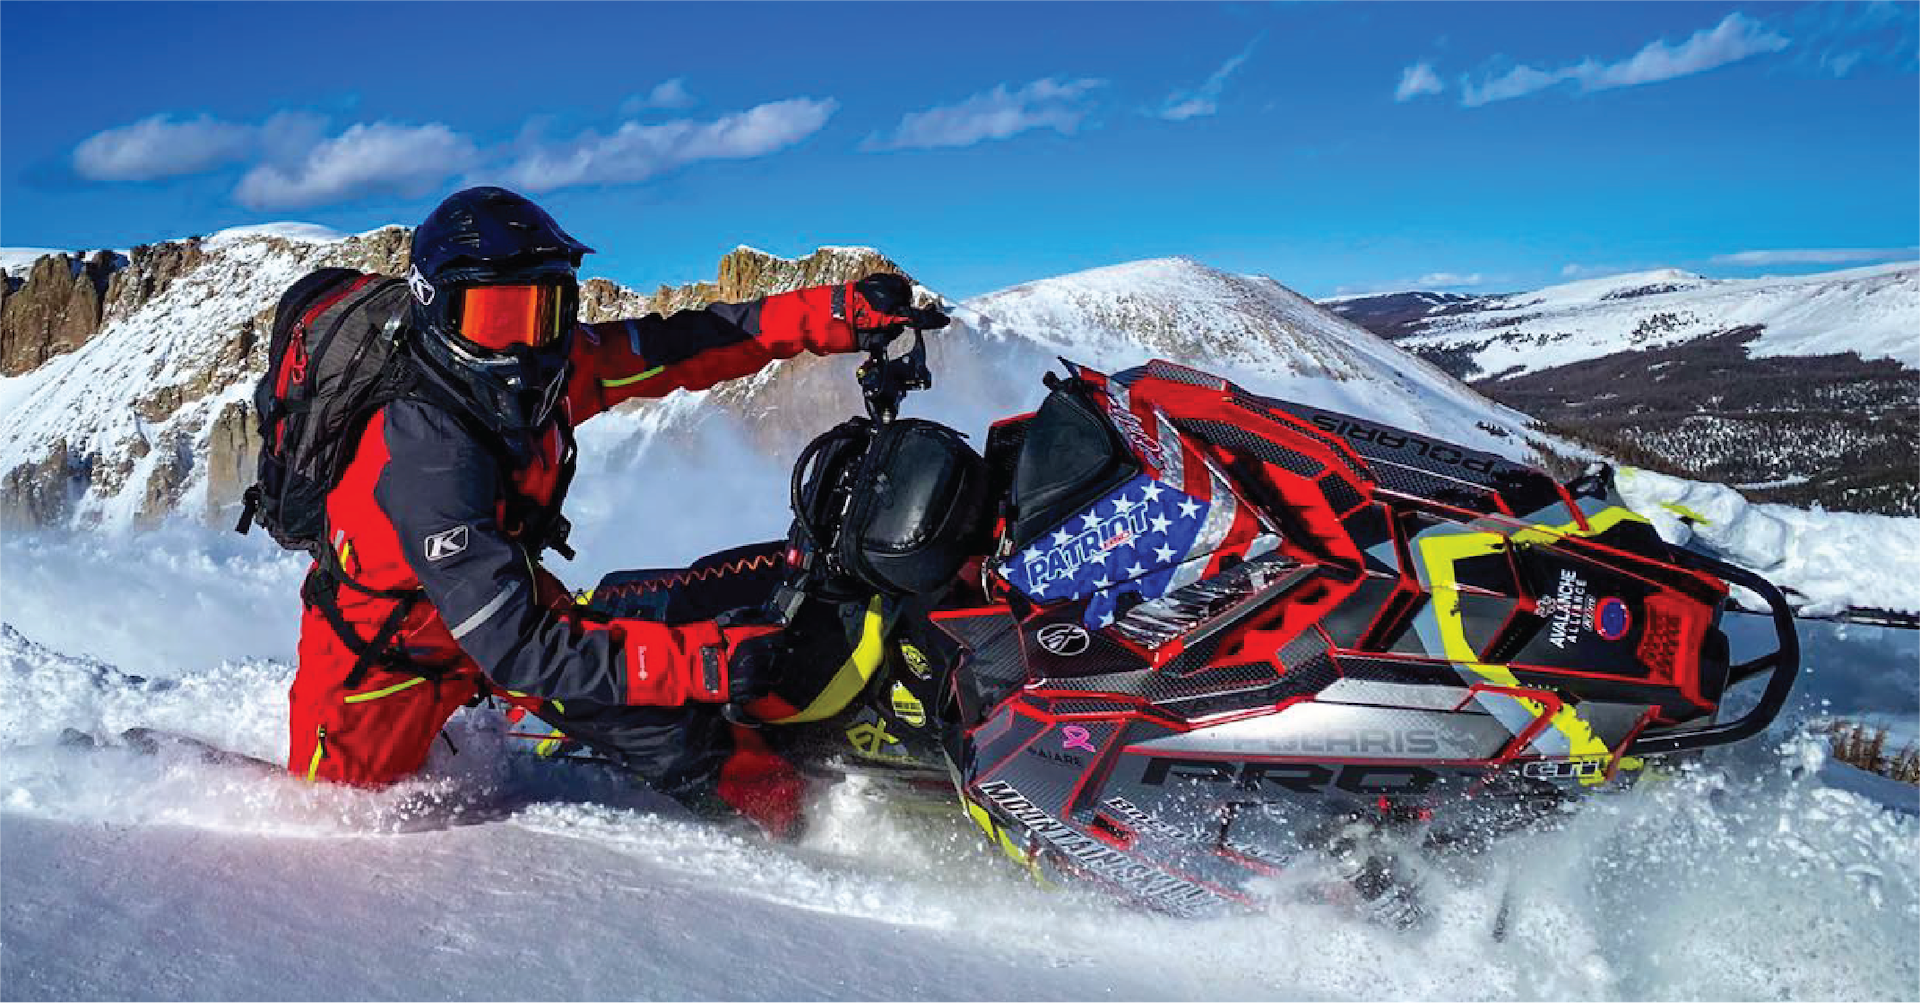 Professional athlete Matt Entz shredding the snow on a Polaris Axys snowmobile